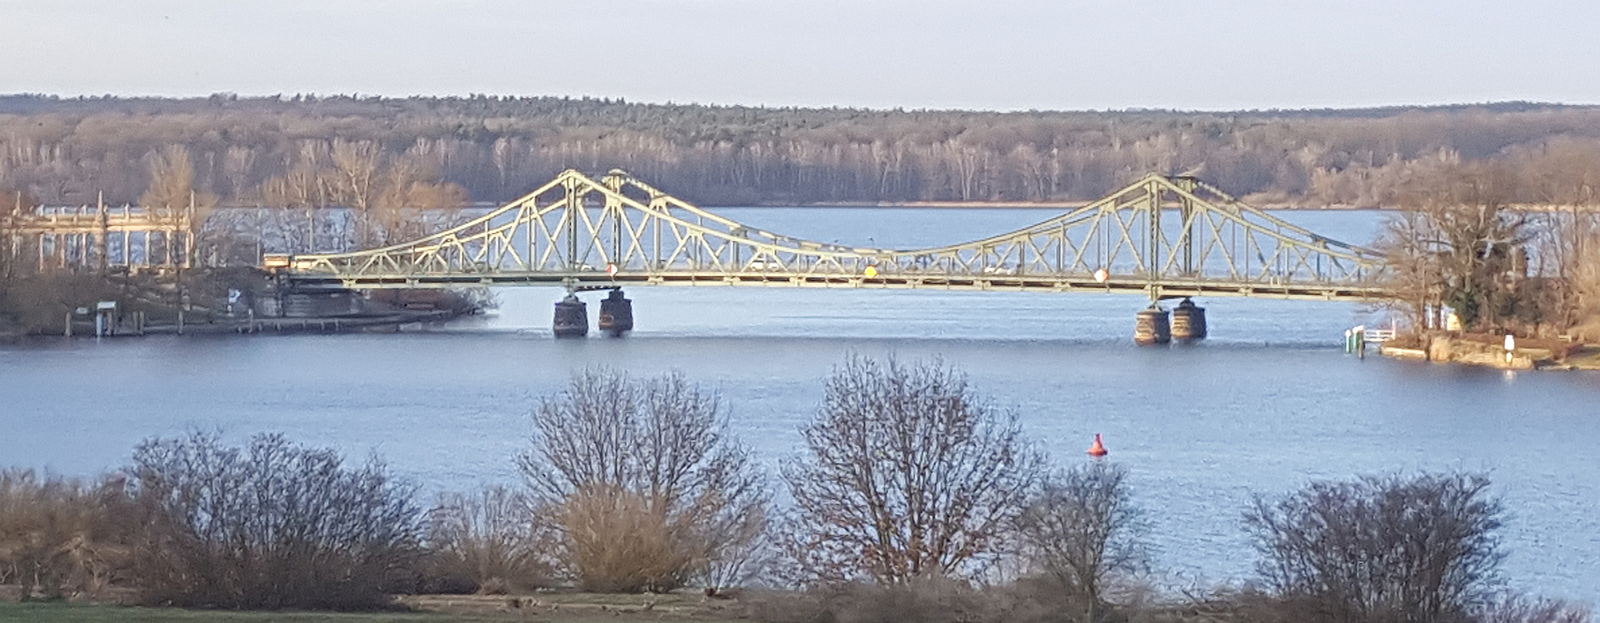 Glienicker Brücke im Winter an einem Sonnentag Heike-Maria Bretschneider, Familienrecht aus Potsdam - Scheidungsanwalt - Familienrechtsanwalt - Trennung Unterhalt